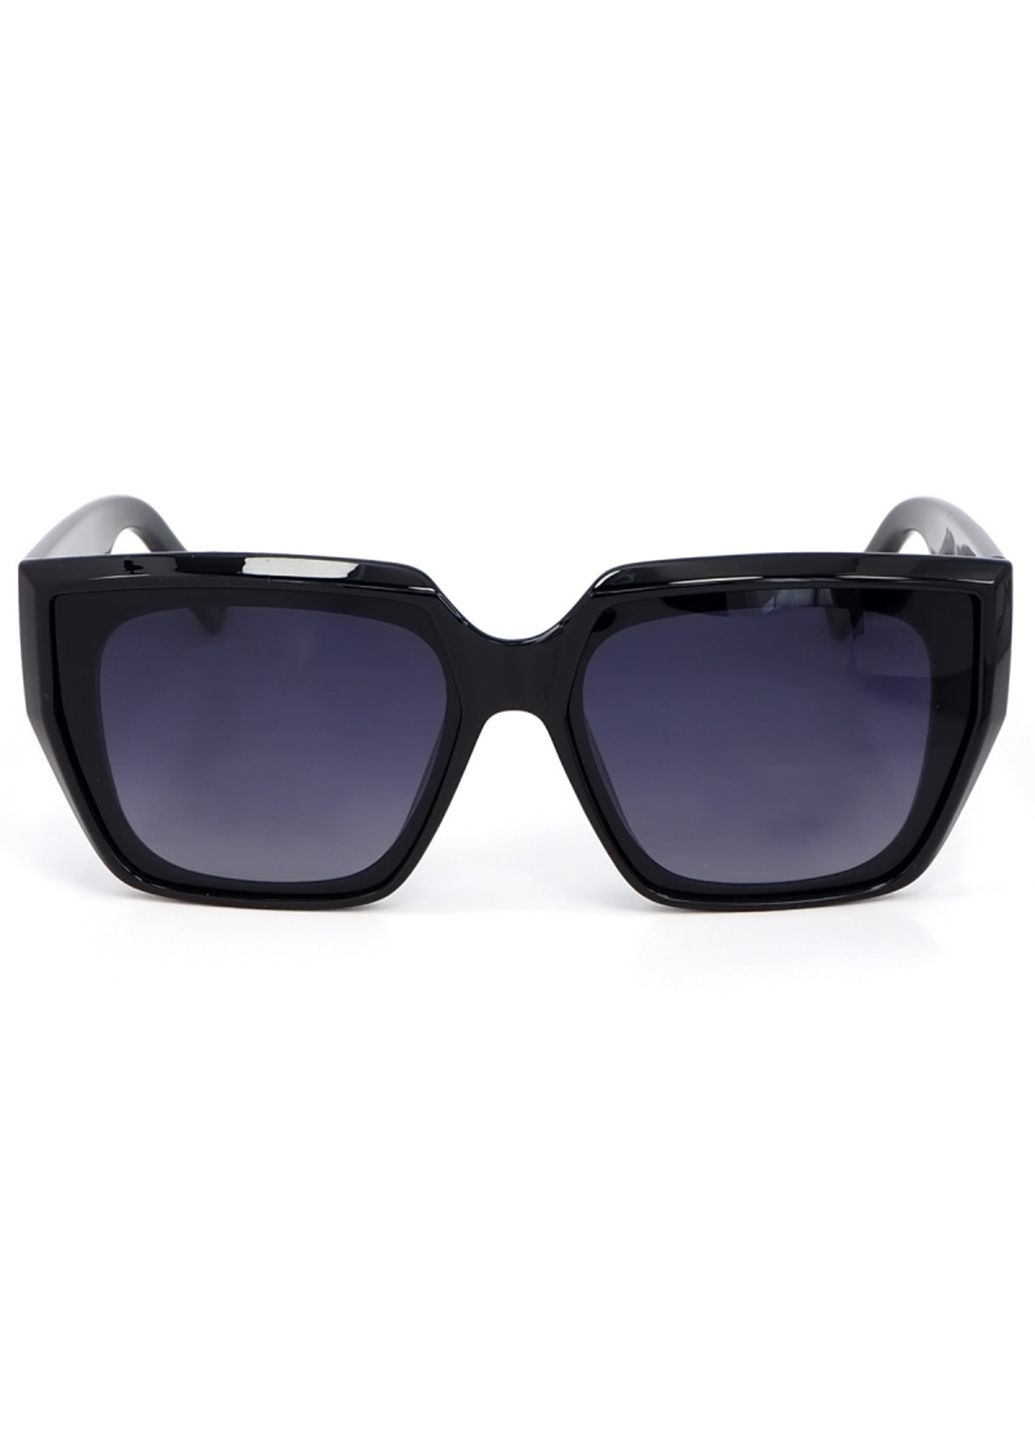 Купить Женские солнцезащитные очки Roberto с поляризацией RM8453 113043 в интернет-магазине